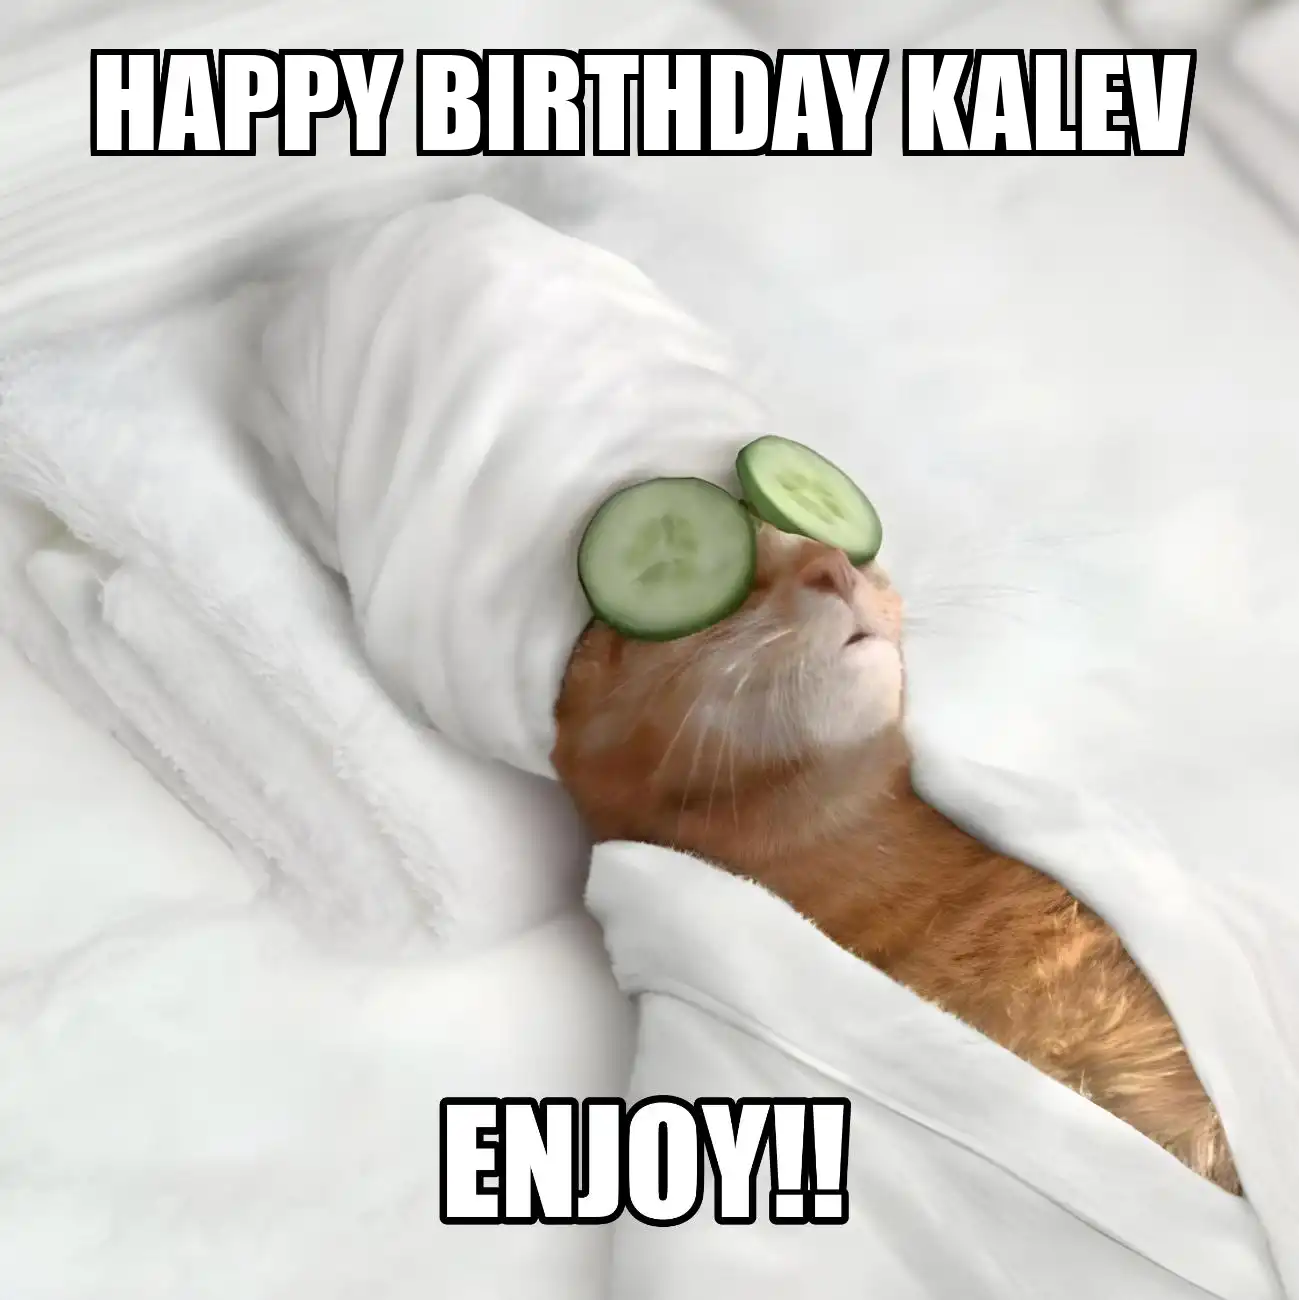 Happy Birthday Kalev Enjoy Cat Meme